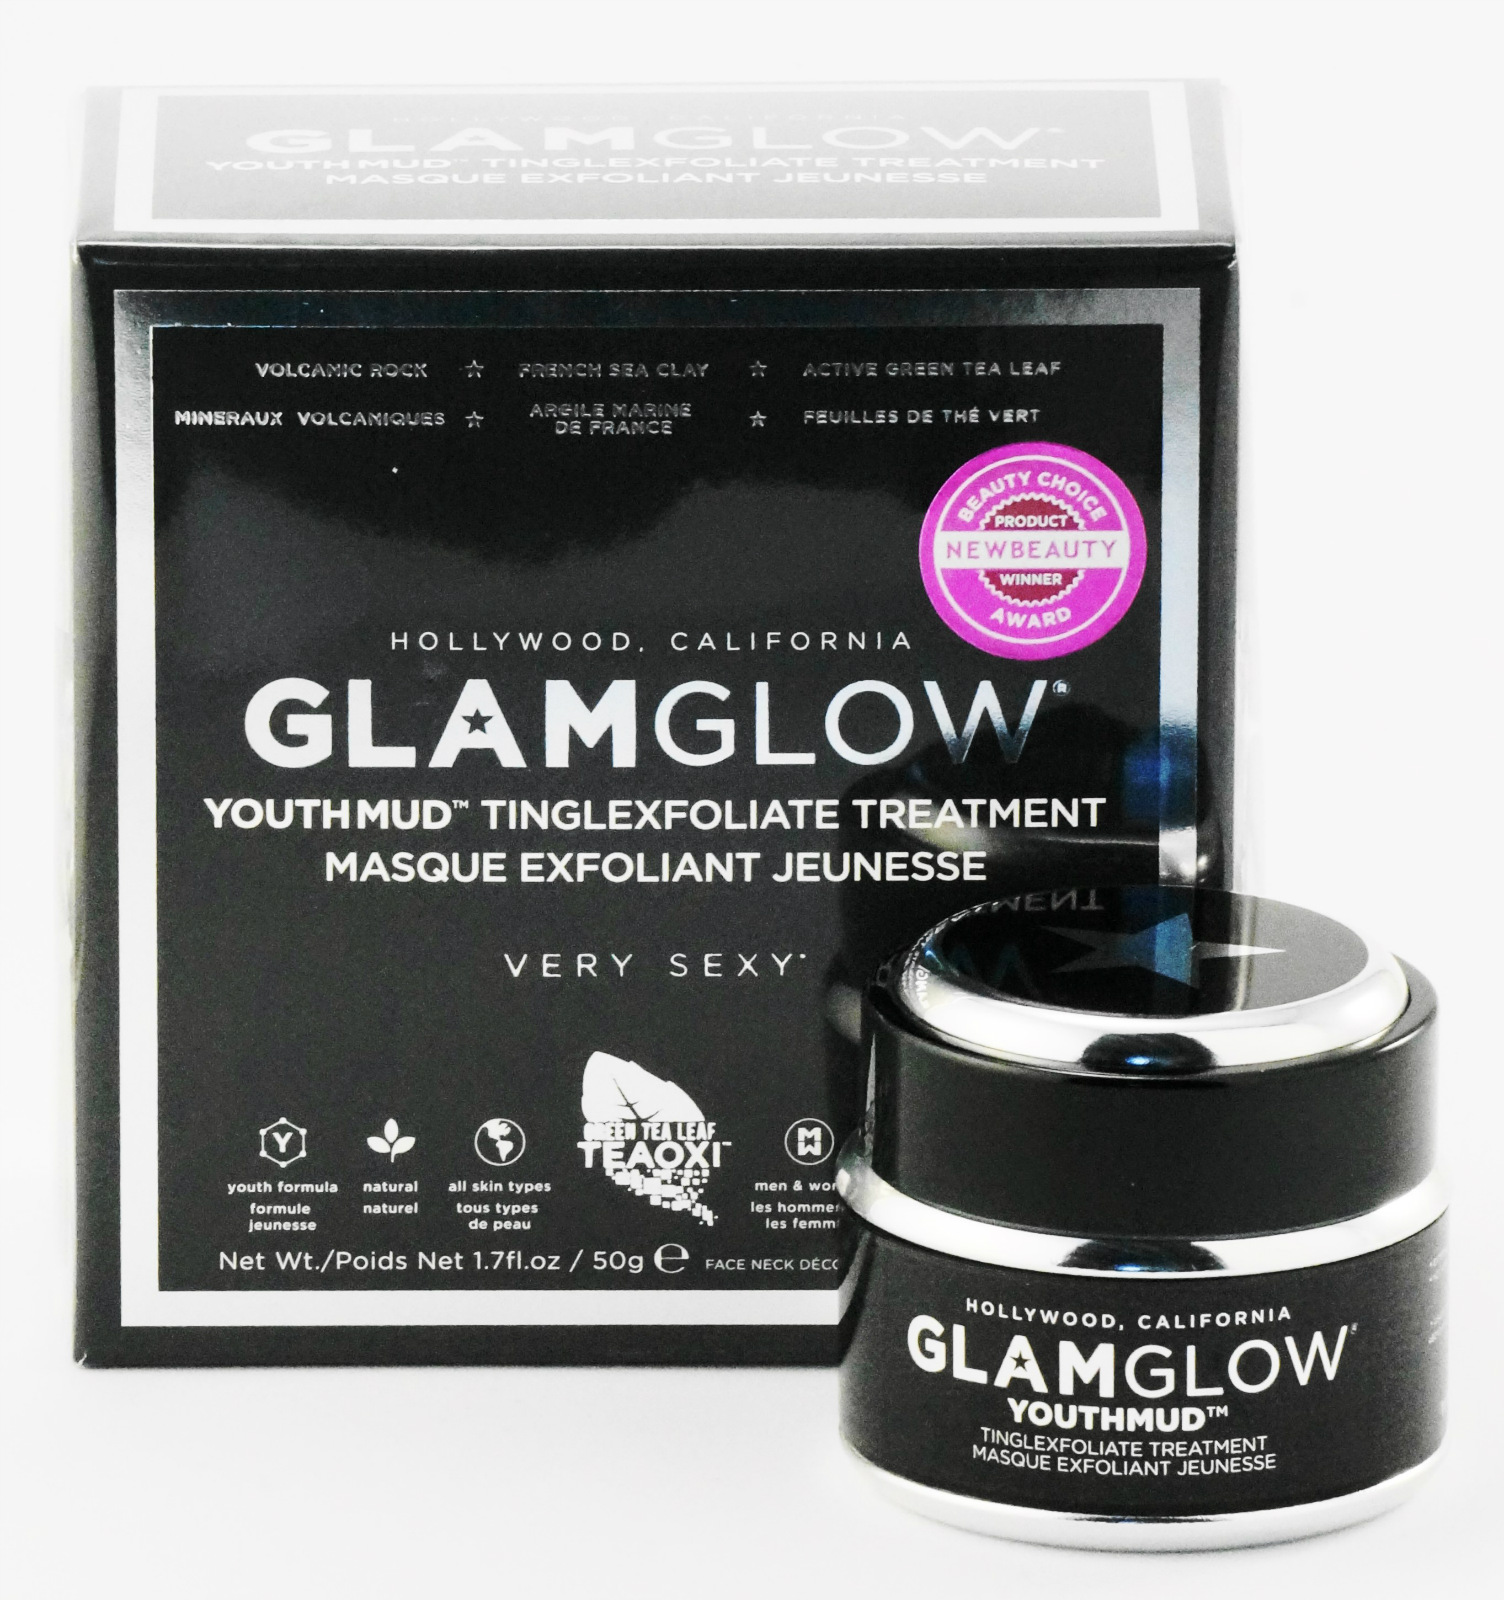 Glamglow Youth Mud Tinglexfoliate Treatment Hollywood Glam Glow Very